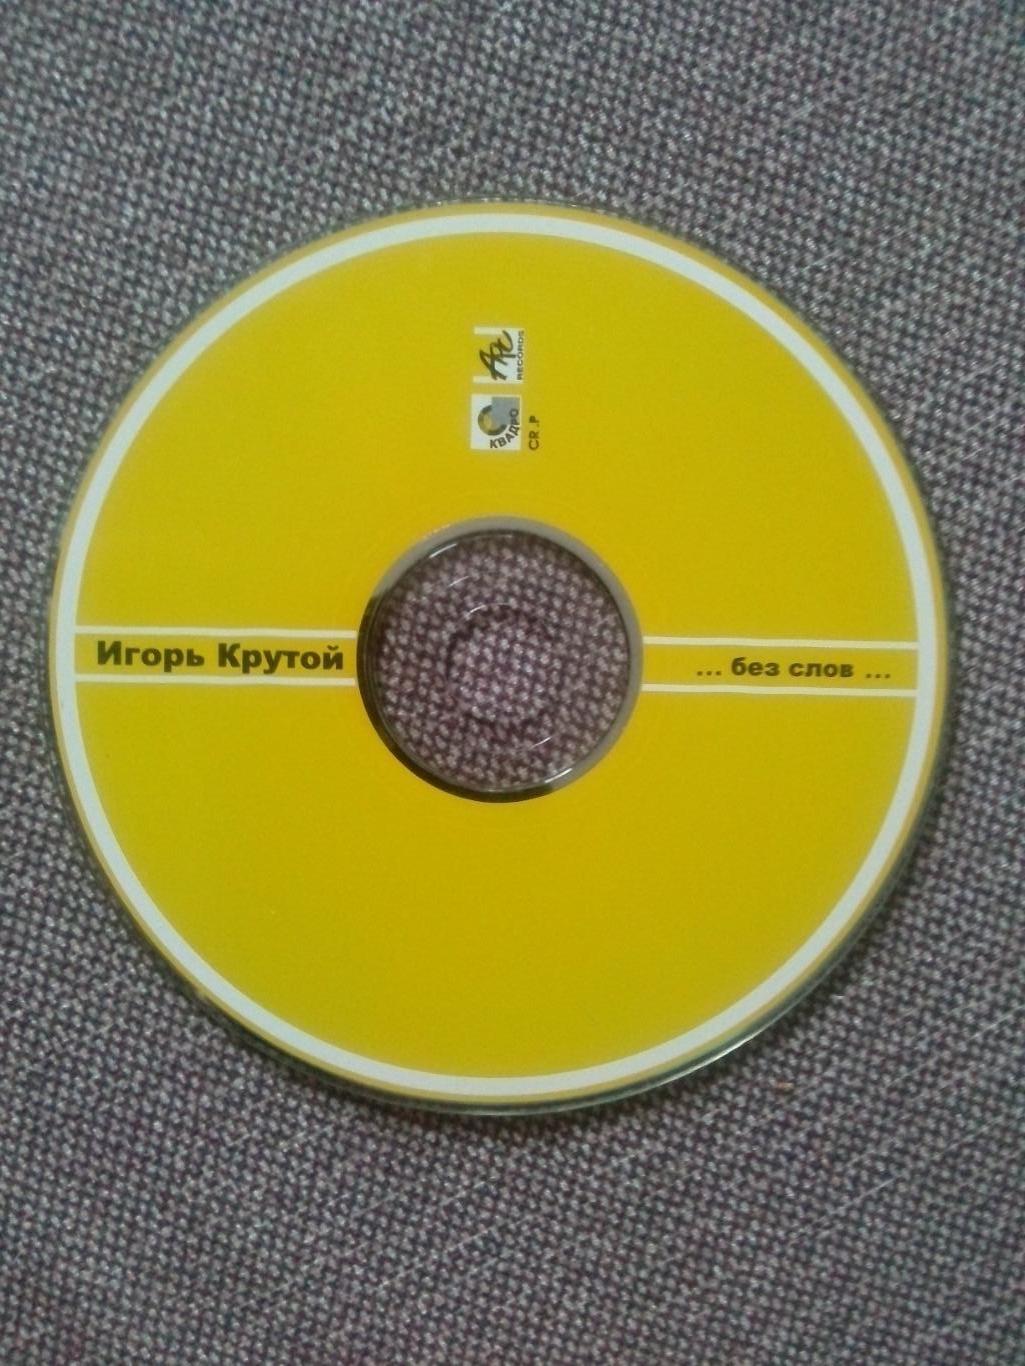 CD диск : Композитор Игорь Крутой - ... без слов ... 2000 г. (студийный альбом 2